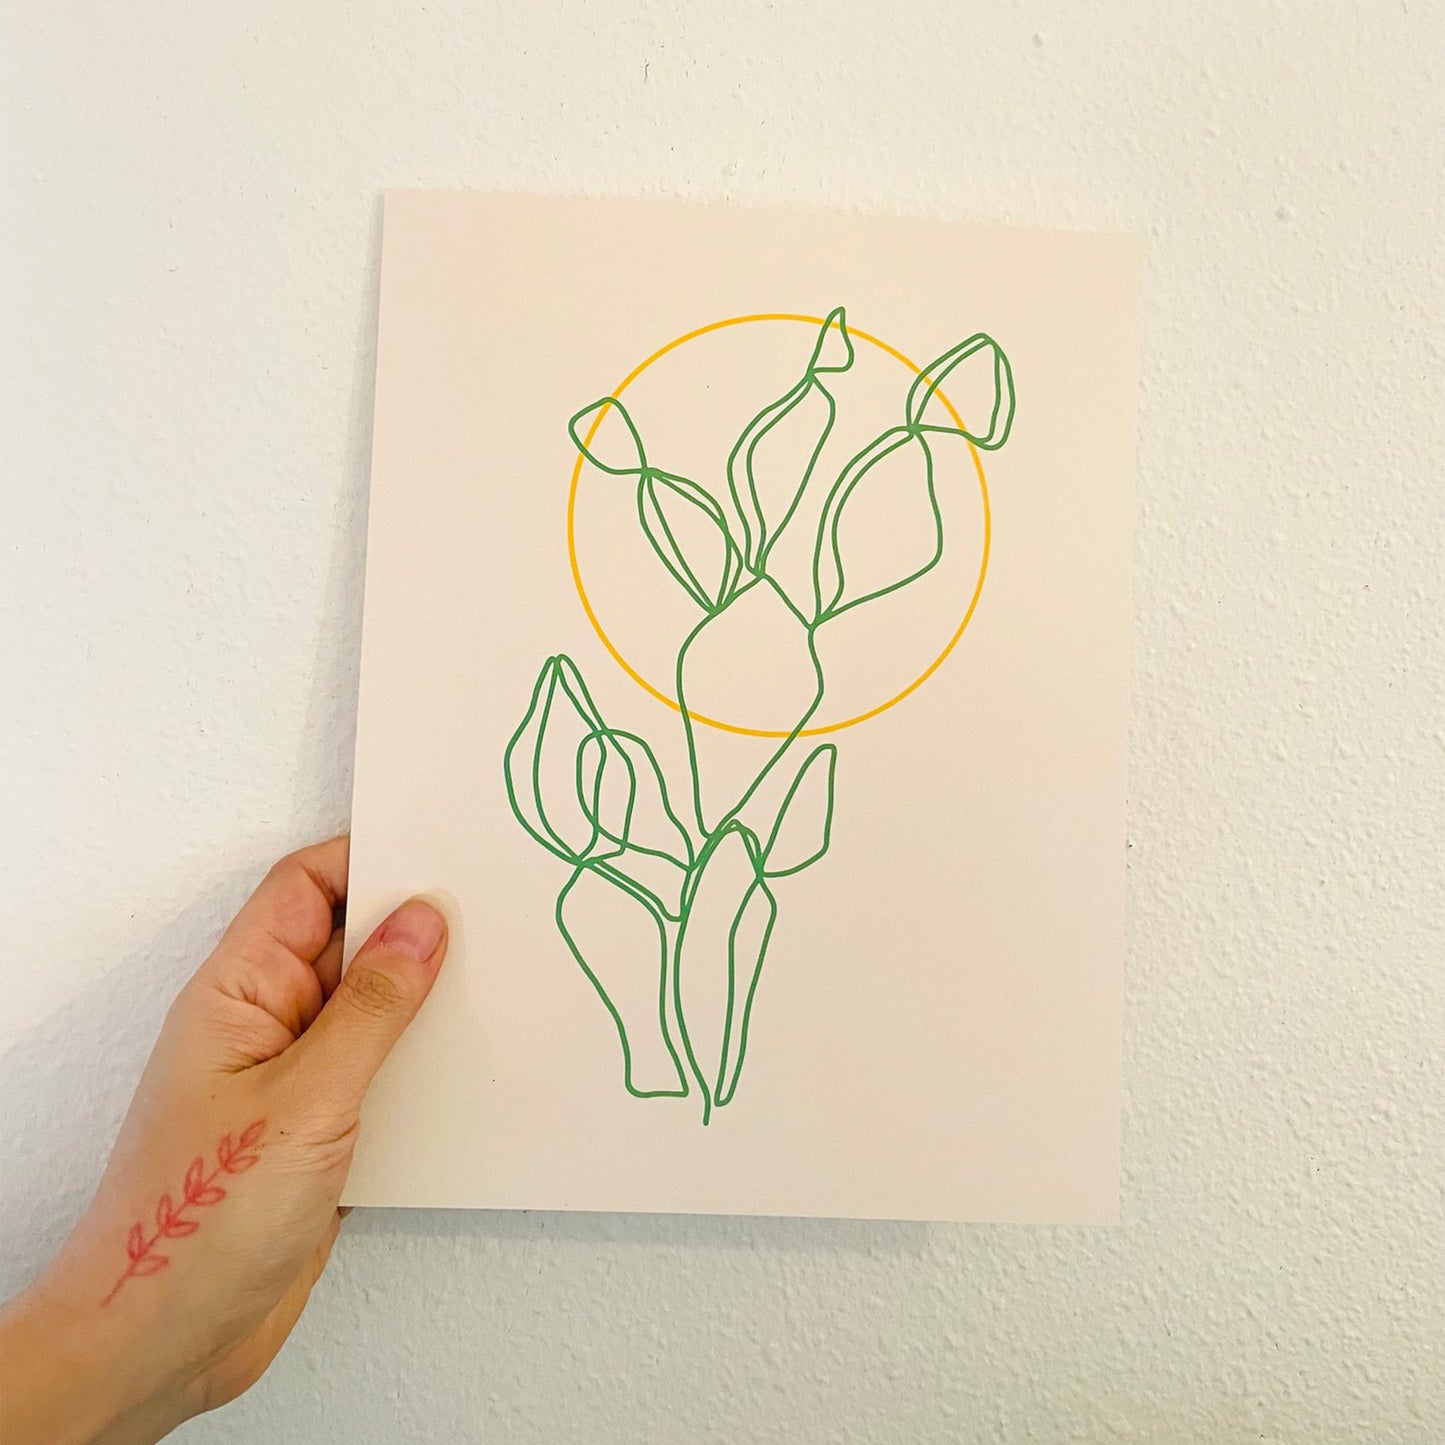 Mercedes Tabish: Cactus Print